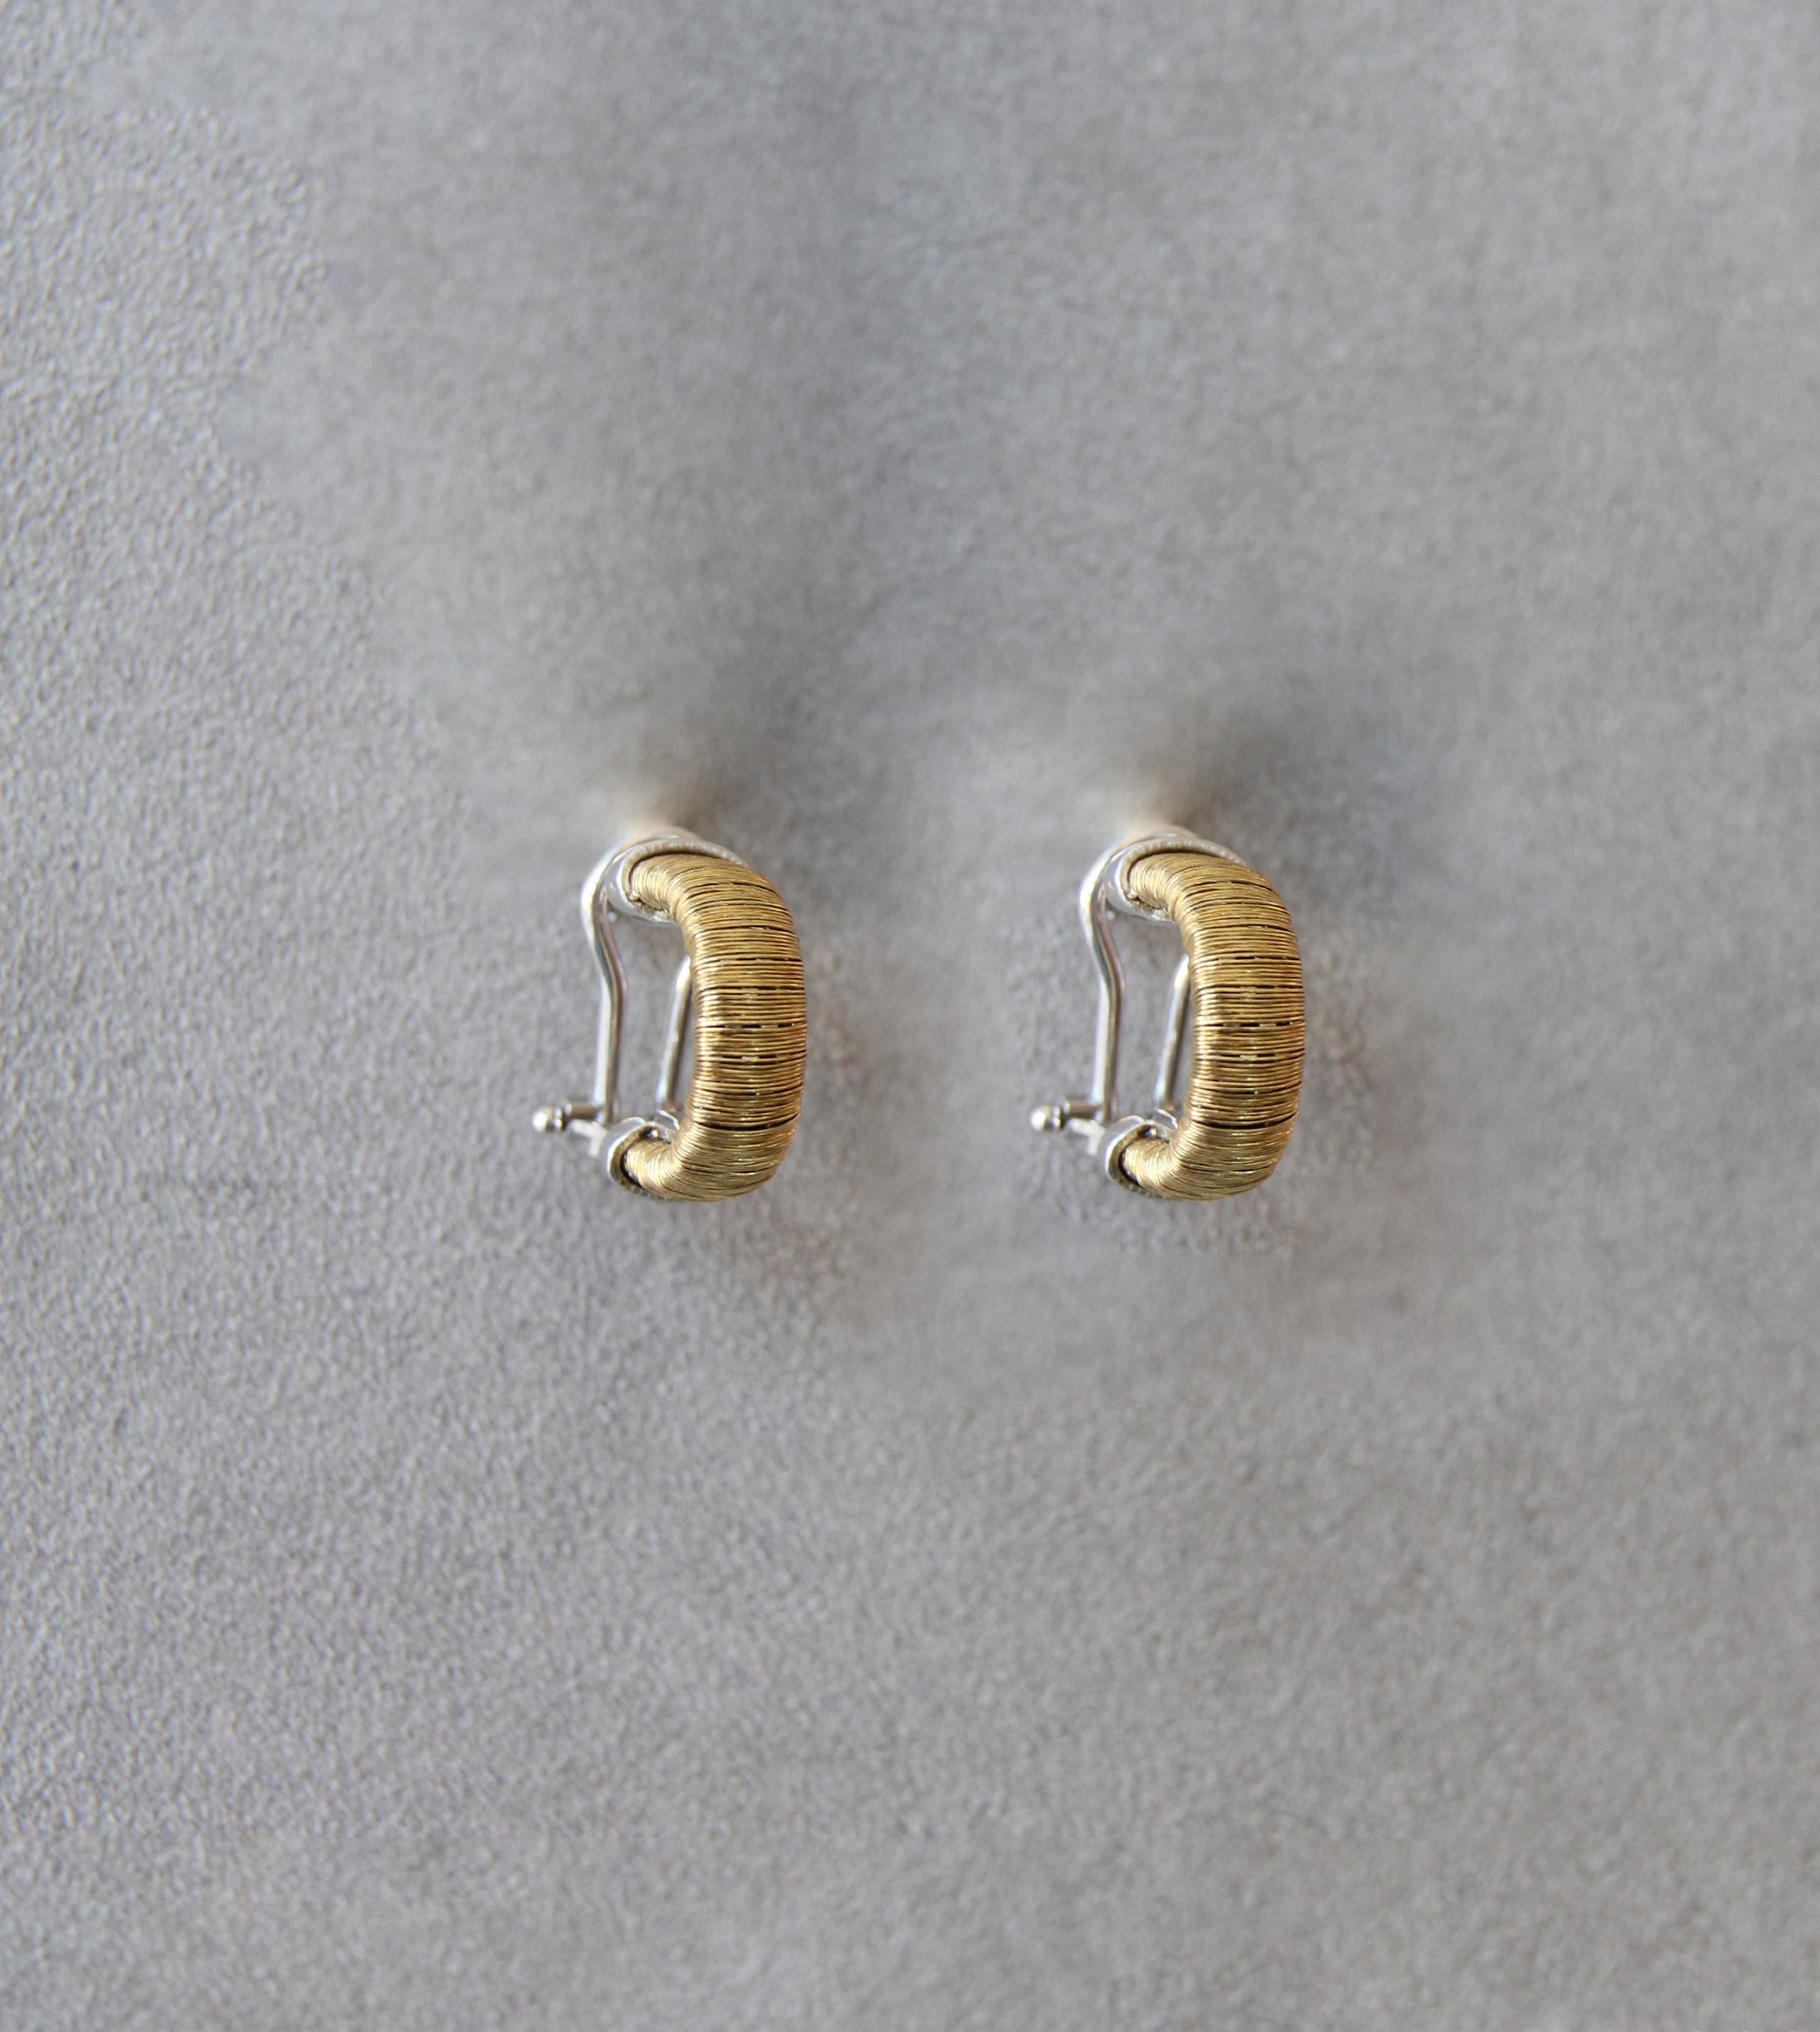 Silver 925 Earrings